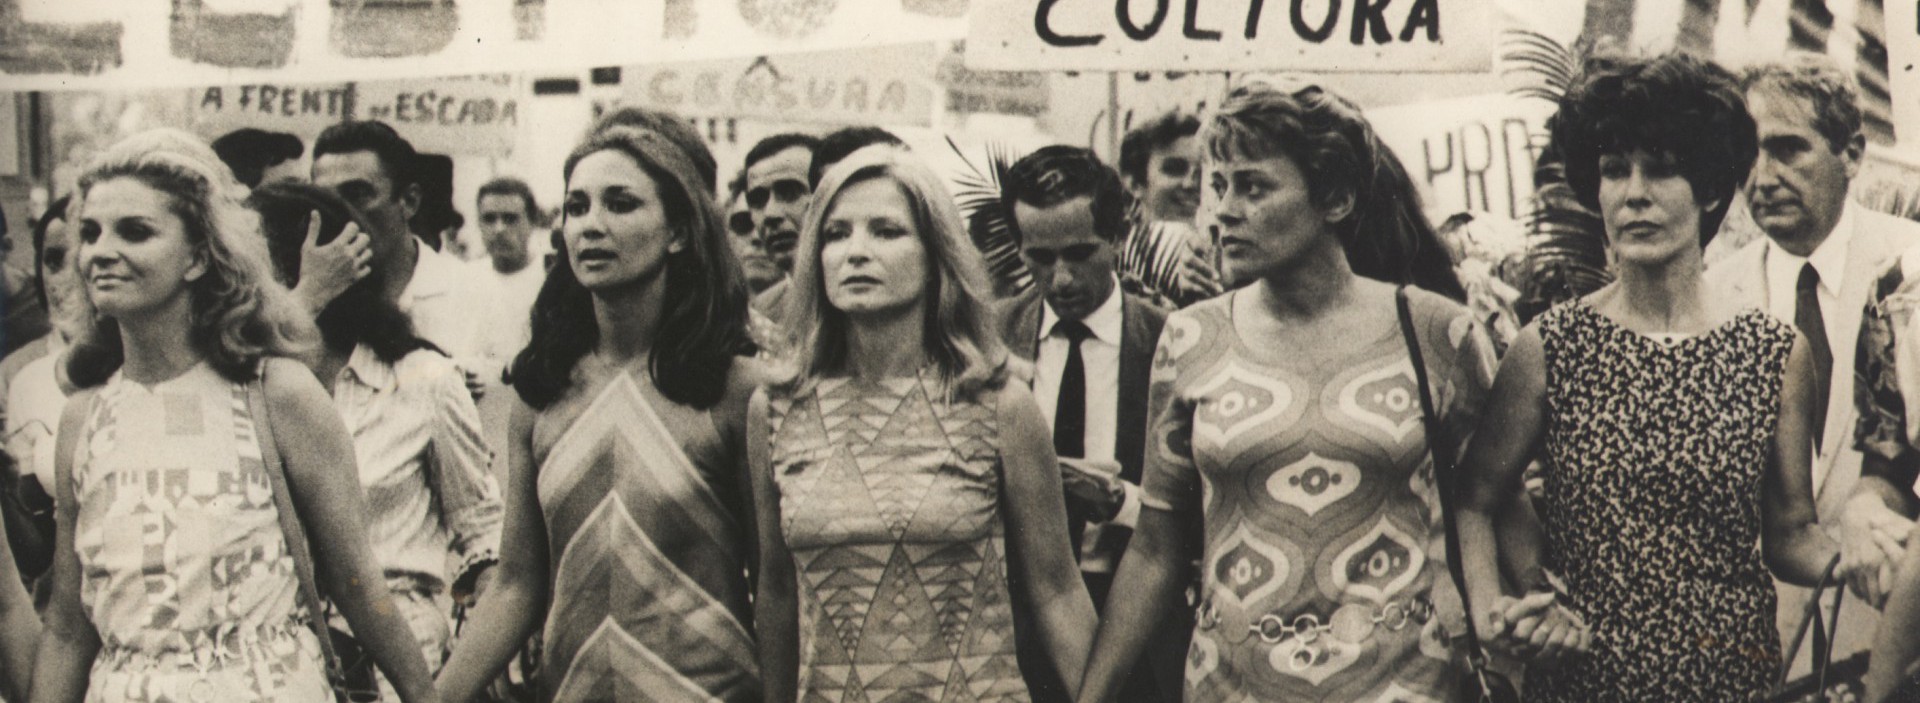 Artistas protestam contra a ditadura militar em fevereiro de 1968. Na imagem, Tônia Carrero, Eva Wilma, Odete Lara, Norma Bengell e Cacilda Becker. (Foto: Arquivo Nacional)